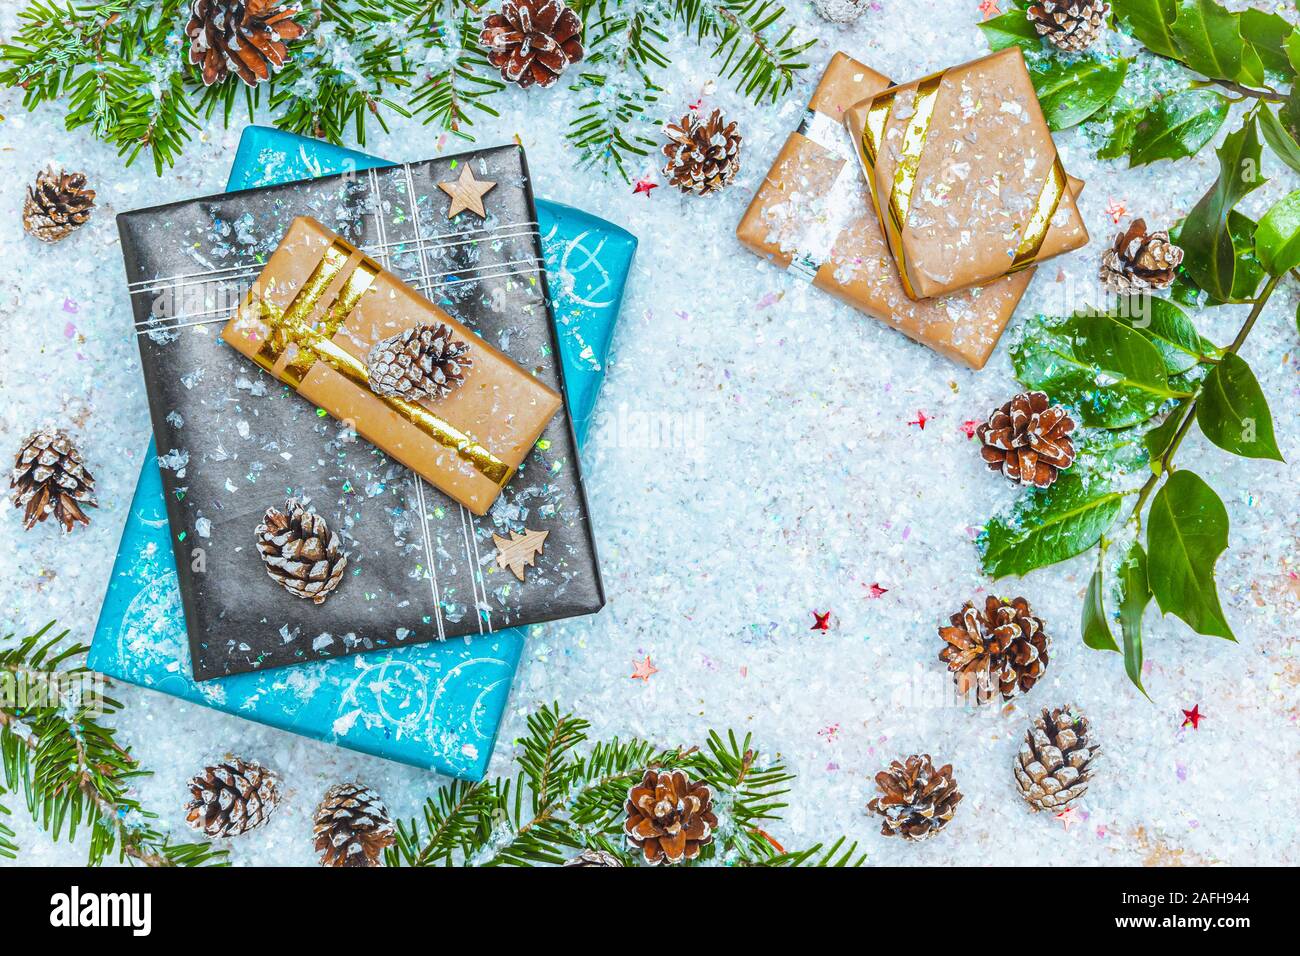 Vista superior plana o imagen de laicos con los regalos de Navidad en la nieve con decoración de navidad como rama de abeto y el cono de los pinos. Copiar o vaciar el espacio para el texto. Foto de stock